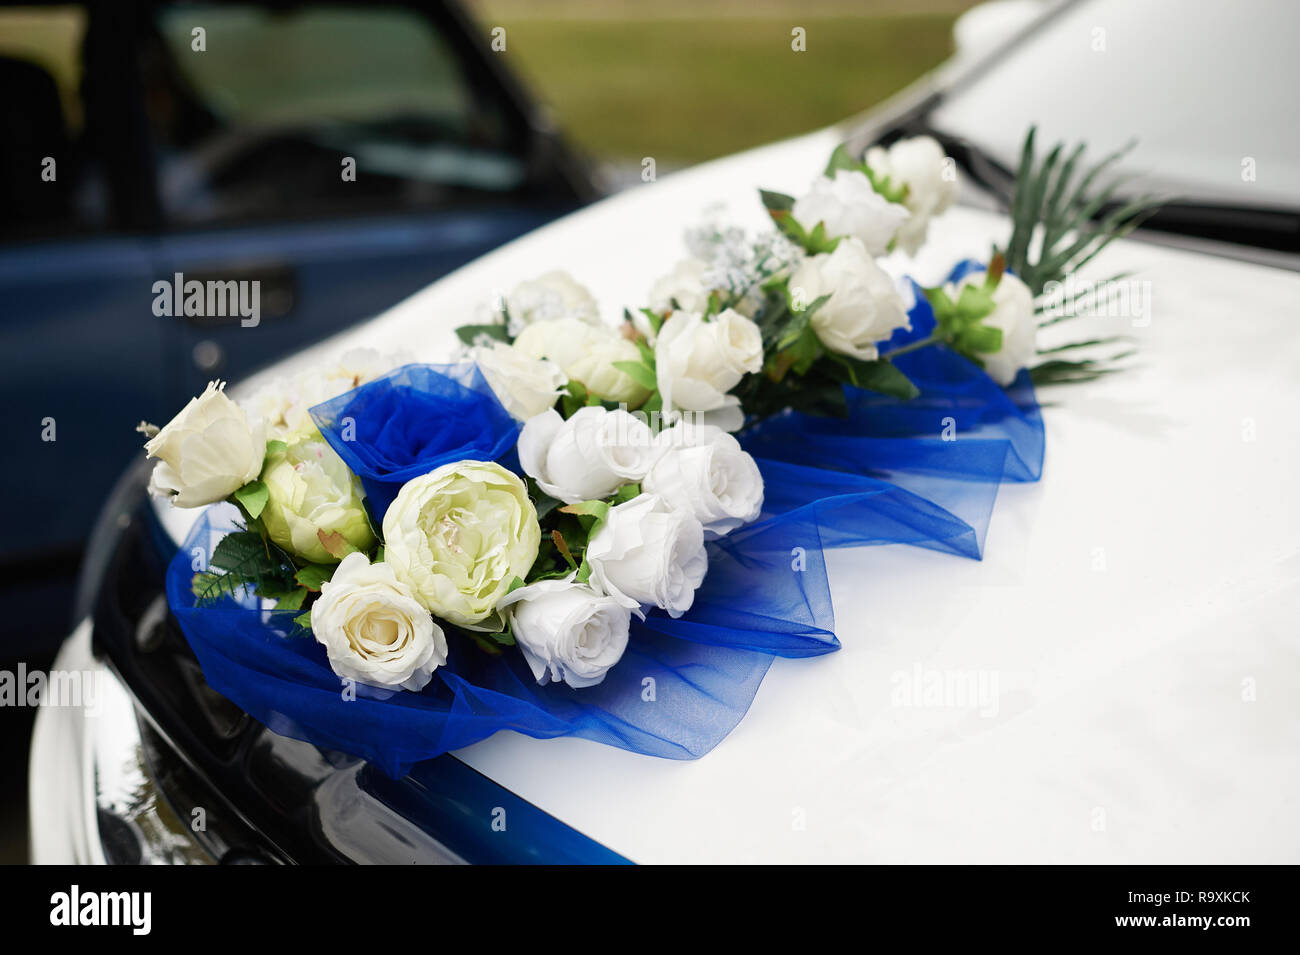 Decoración coche boda bouquet de flores flores boda la decoración